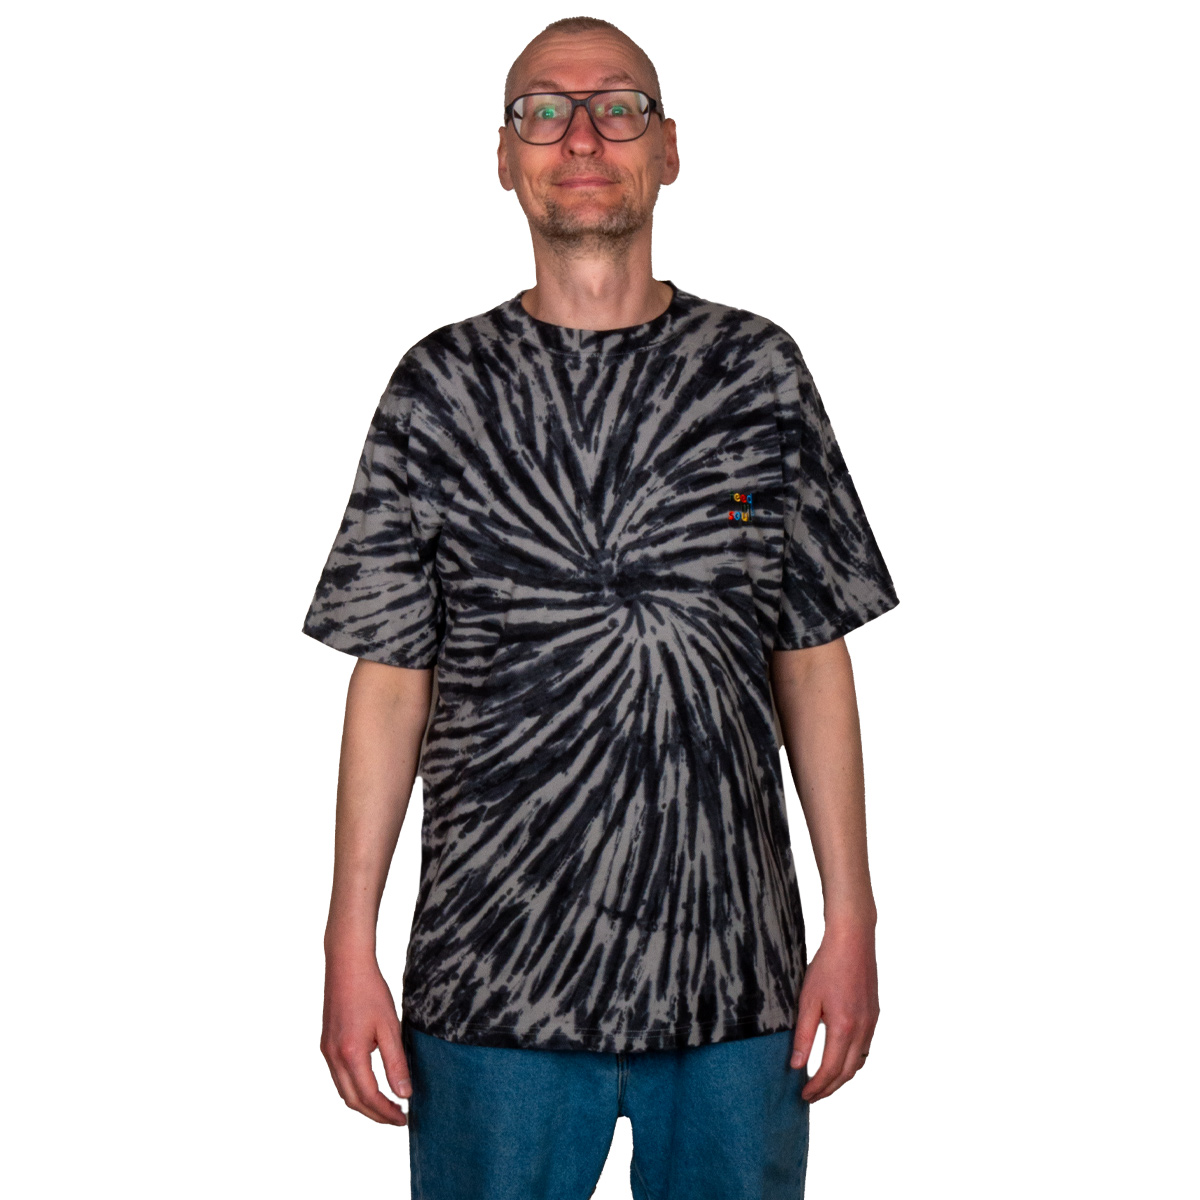 Feedmysoul T-Shirt Colour Emb (tie dye batik)